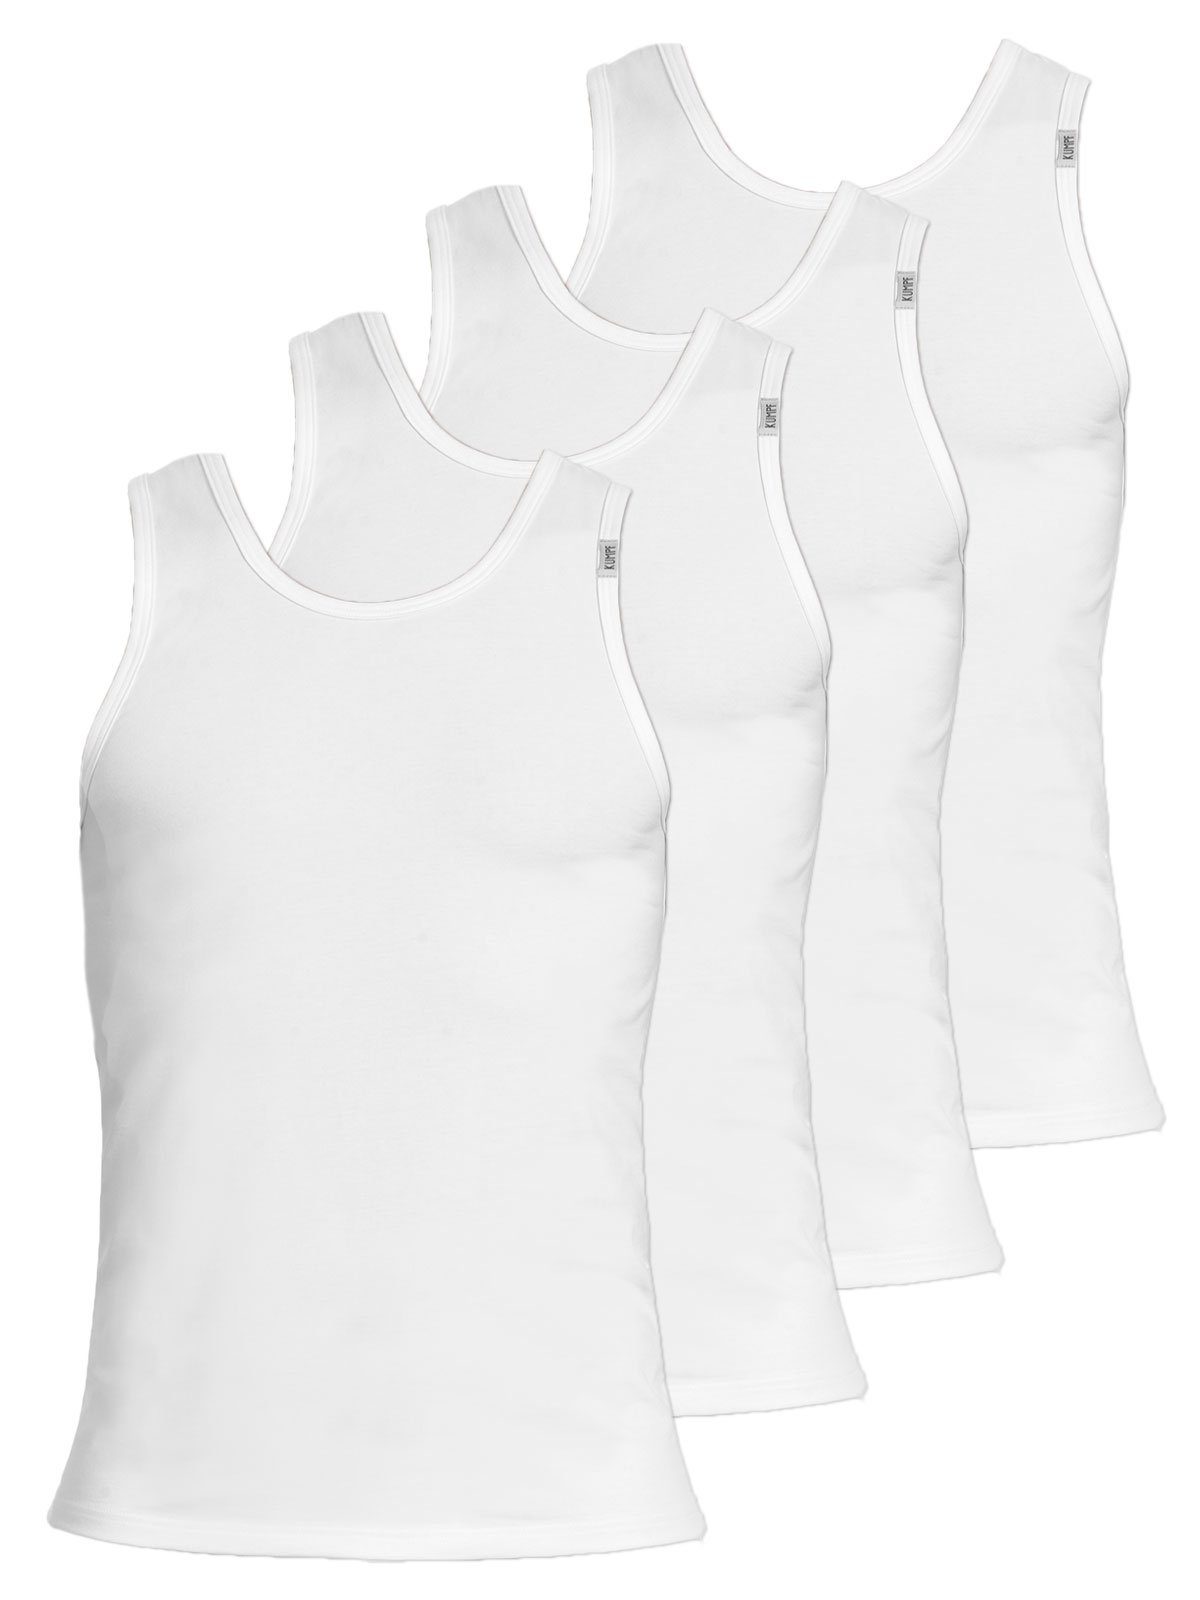 KUMPF Achselhemd 4er Sparpack Herren Unterhemd Bio Cotton (Spar-Set, 4-St) hohe Markenqualität weiss | Ärmellose Unterhemden